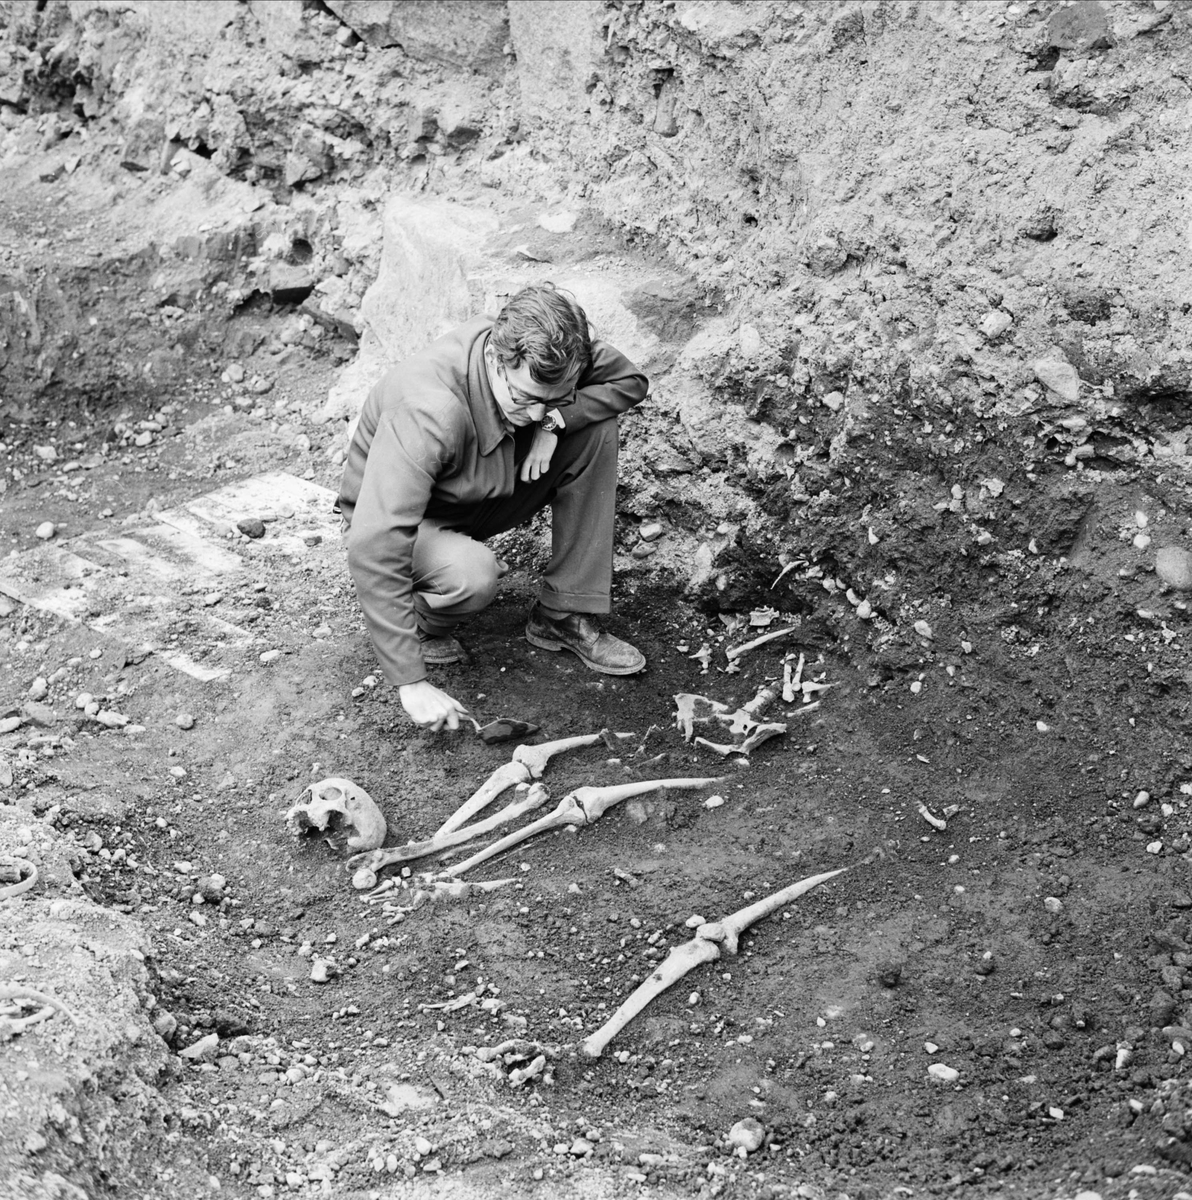 "Fina grävningsfynd bekräftar hypoteser", arkeologisk undersökning, sannolikt i Uppsala,1962